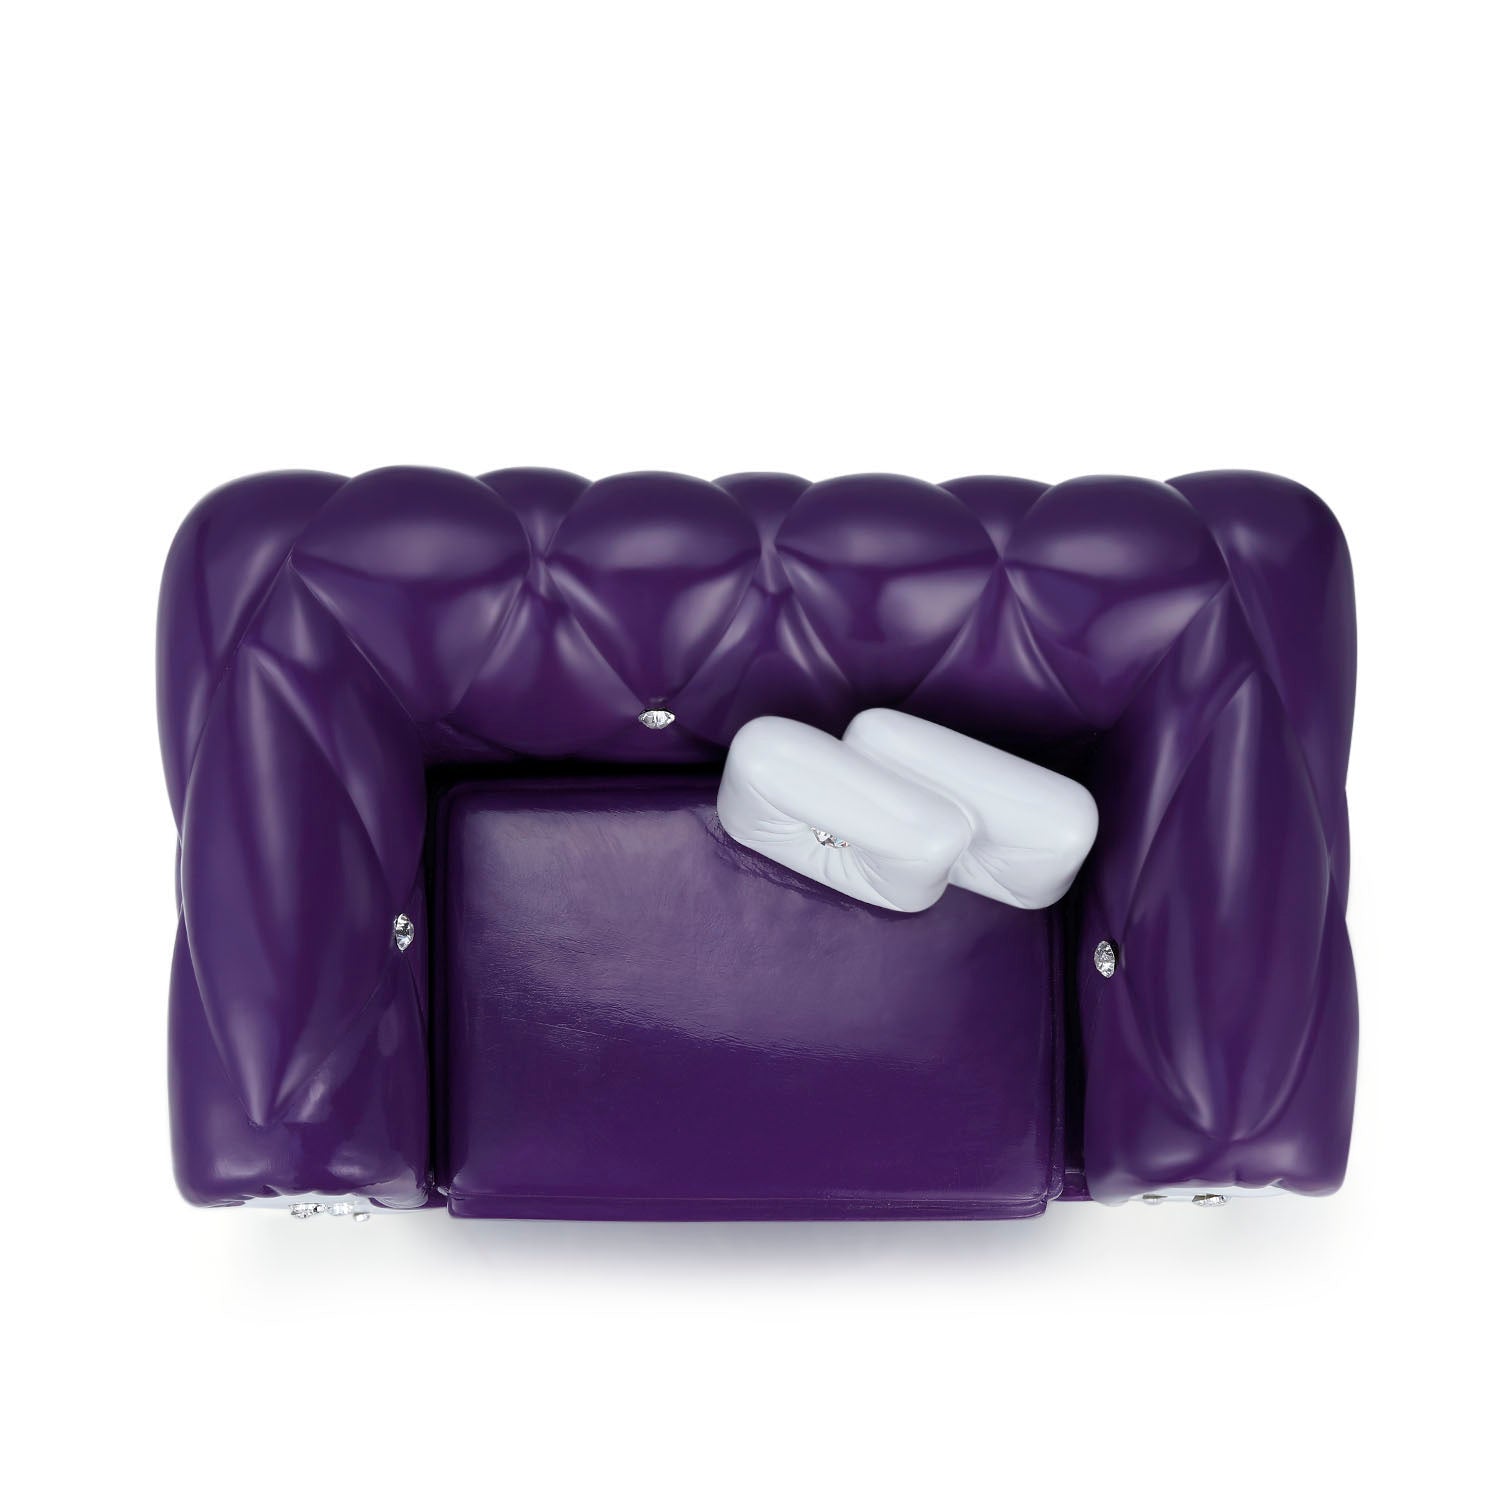 漂亮的樹脂沙發造型紫色首飾盒